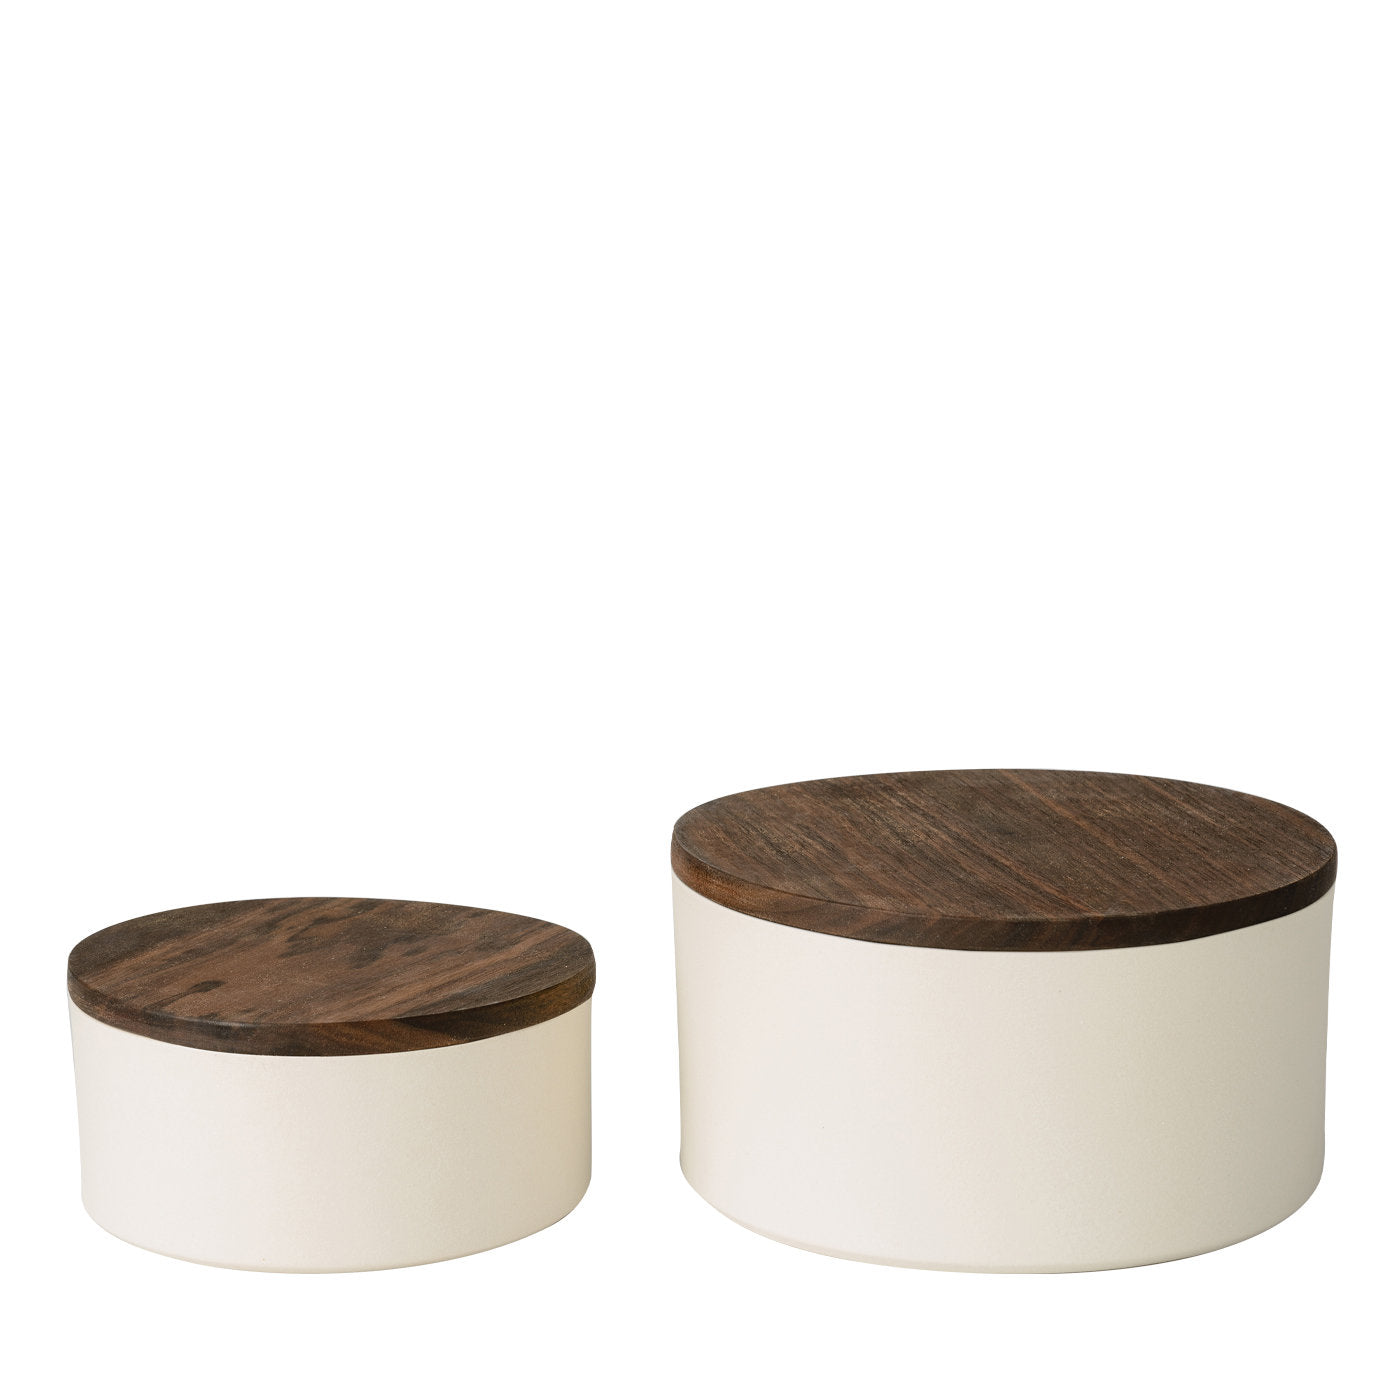 Lote de 2 recipientes redondos de cerámica con tapa de madera  - Vista principal